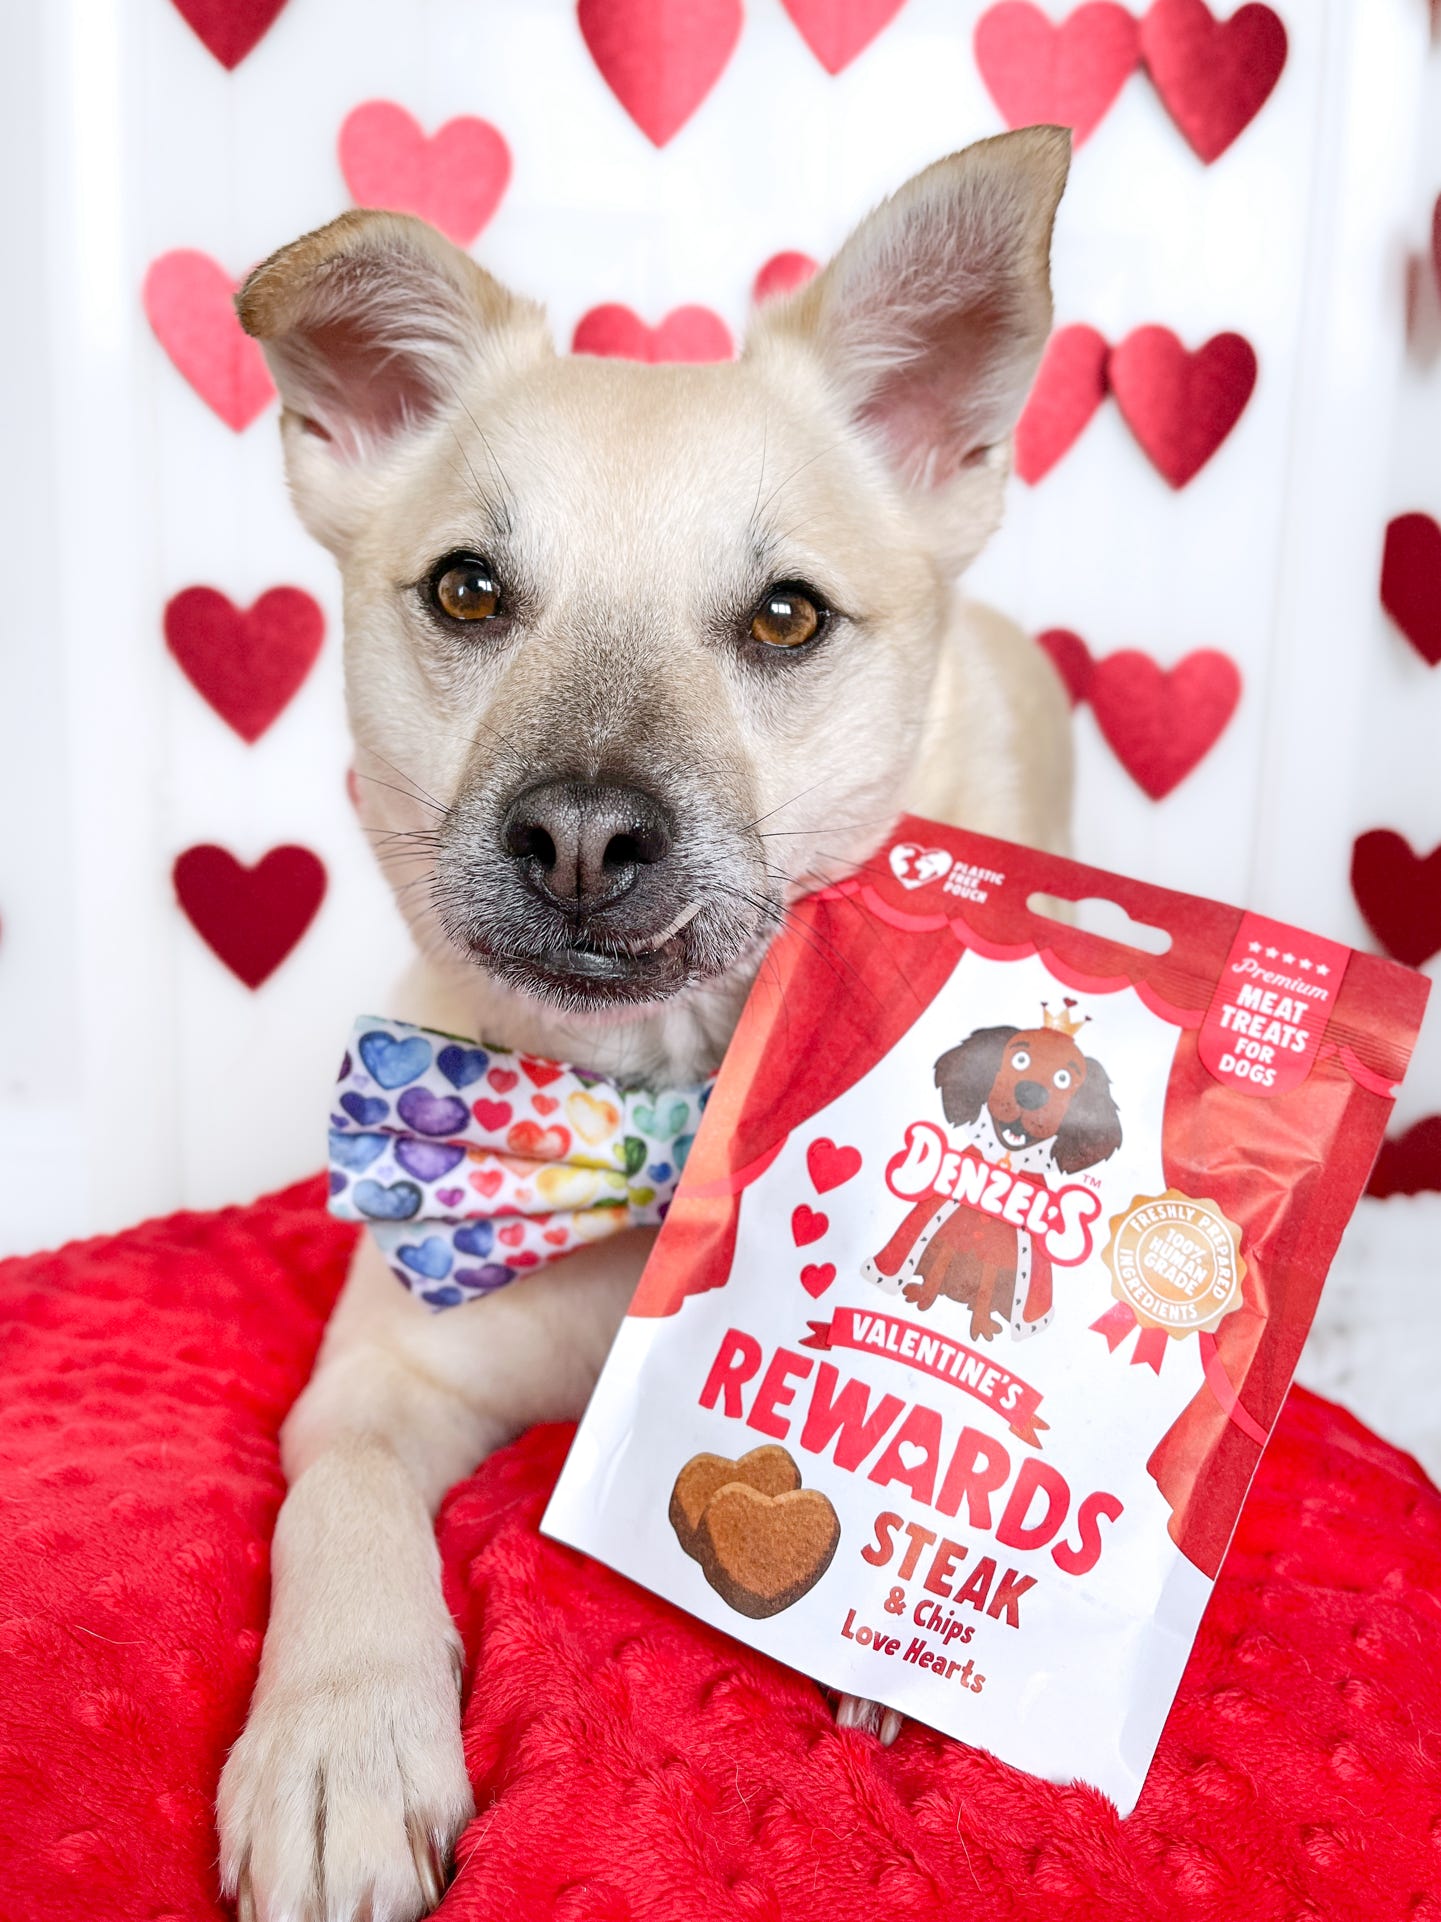 Denzel’s Valentines Steak & Chips Rewards